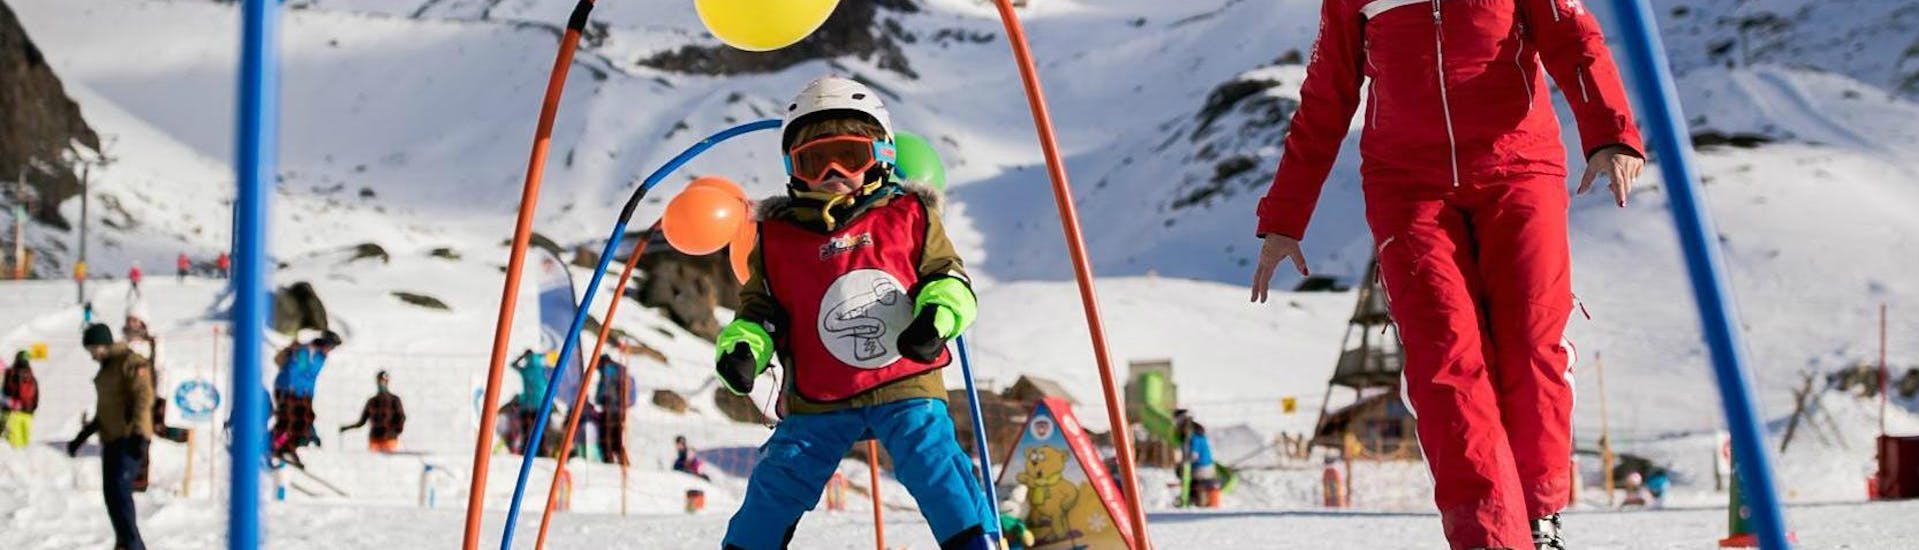 Un ski privé Un enfant s'amuse lors de son cours de ski pour enfants "Puces des neiges" (3-5 ans) pour débutants à l'école de ski suisse de Saas-Grund.Guide de l'école de ski suisse de Wengen montrant les montagnes à un skieur.